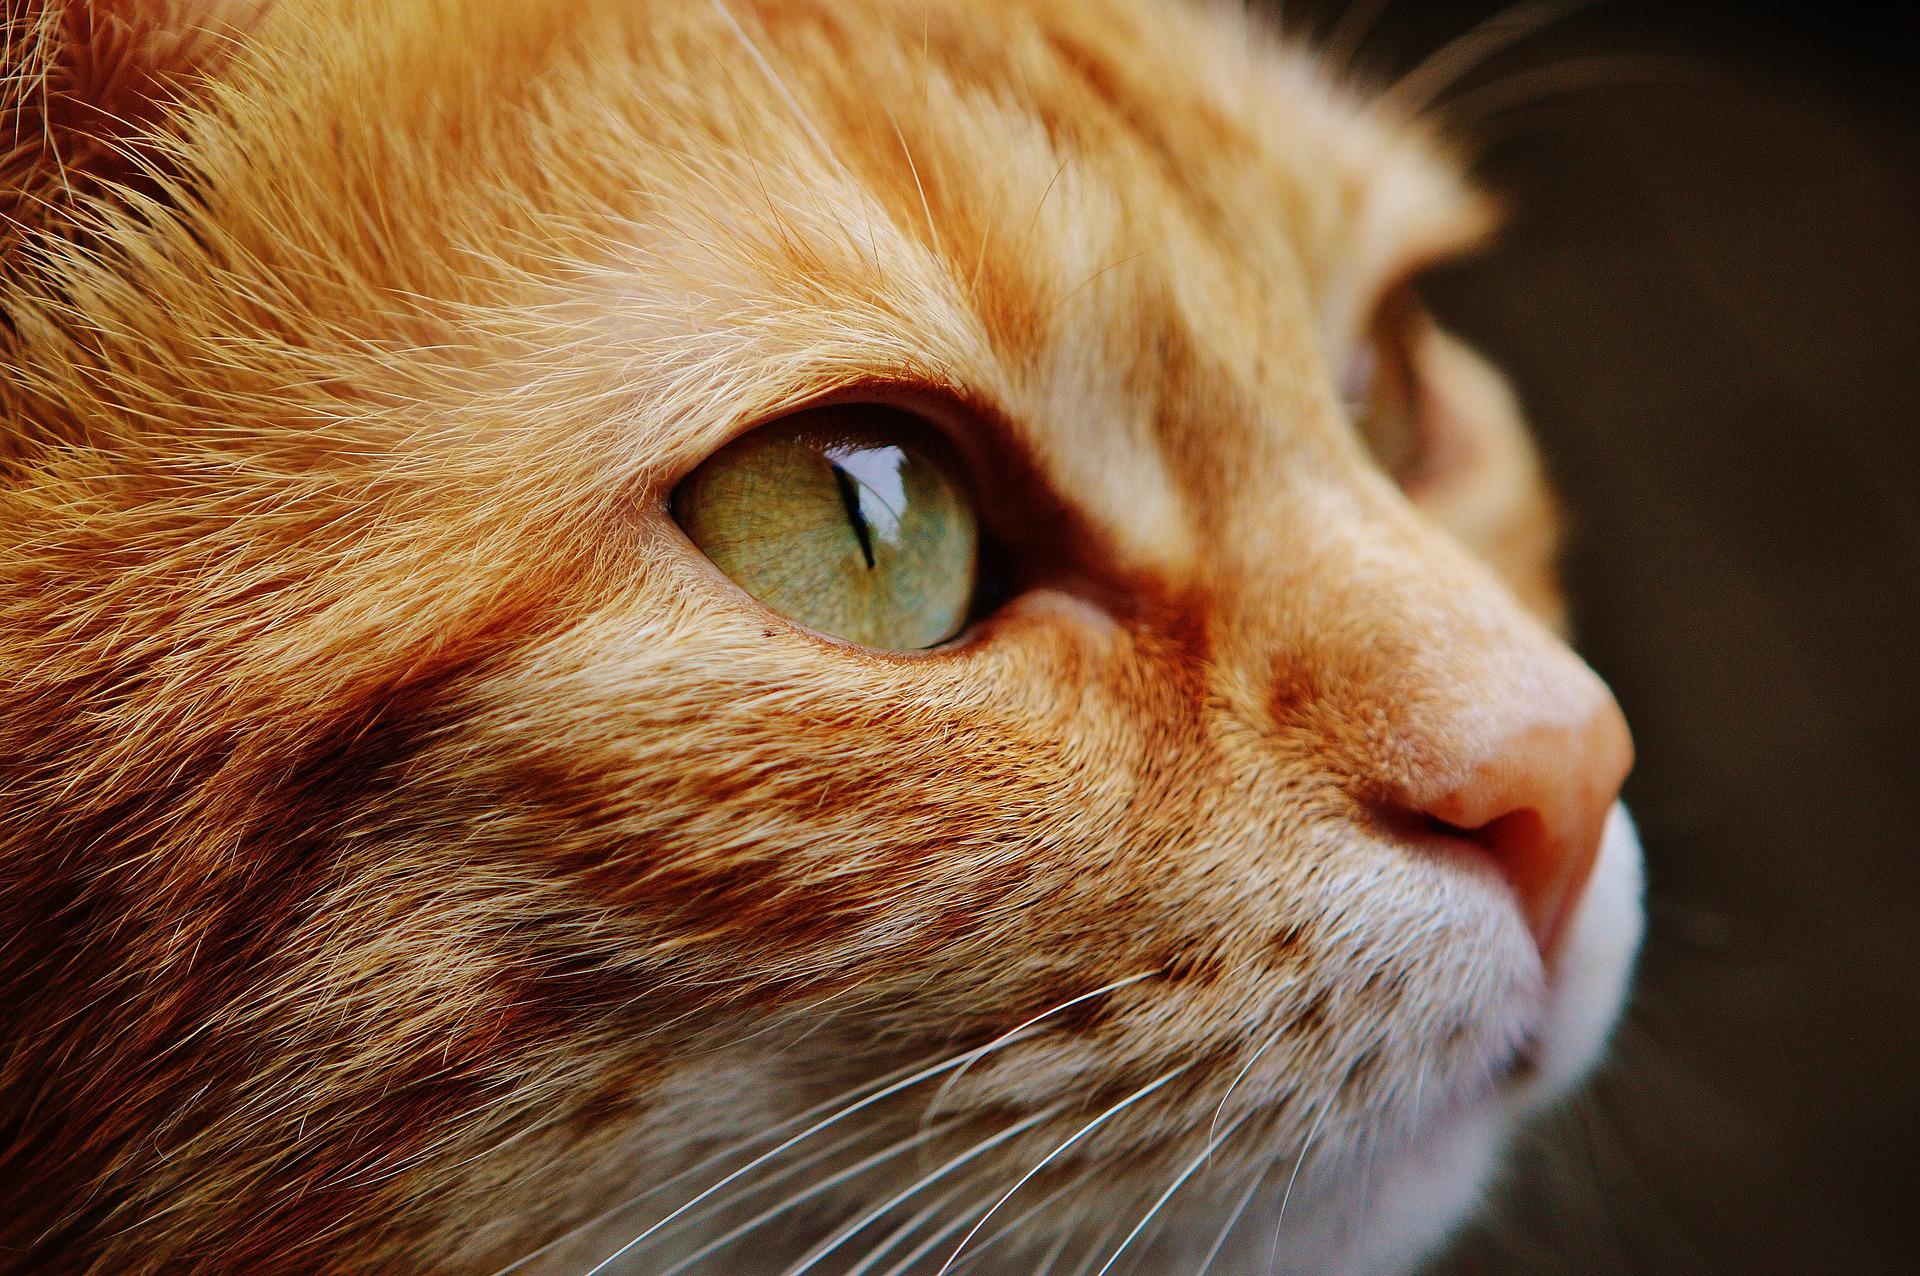 Ύδρα: Πρόστιμο 15.000 ευρώ σε 58χρονο που έριξε γάτα από τον πρώτο όροφο καταστήματος